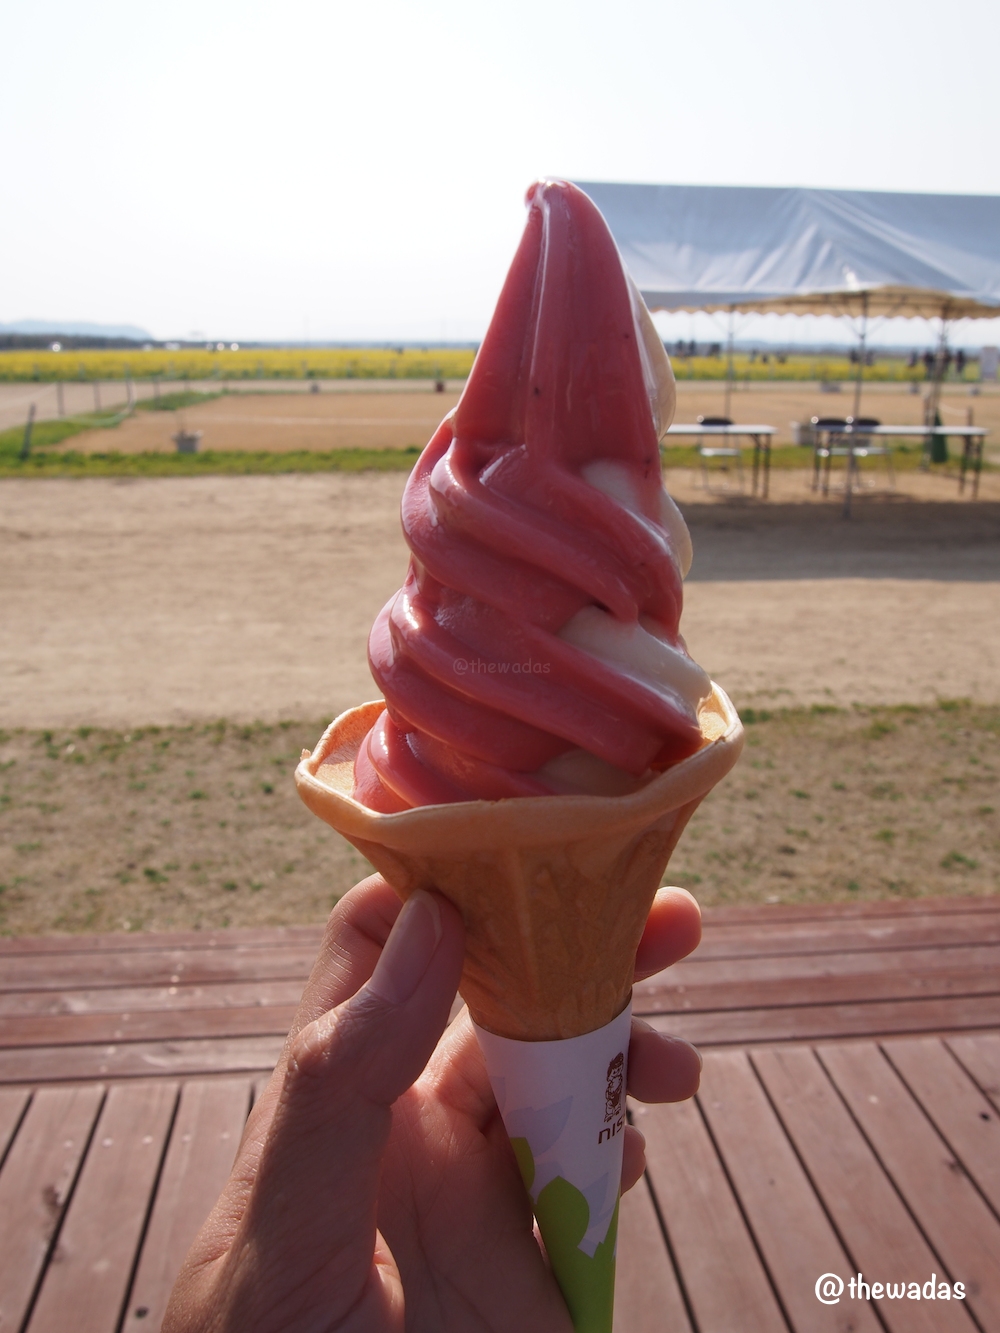 Kasaoka Bayfarm: strawberry-milk soft ice cream